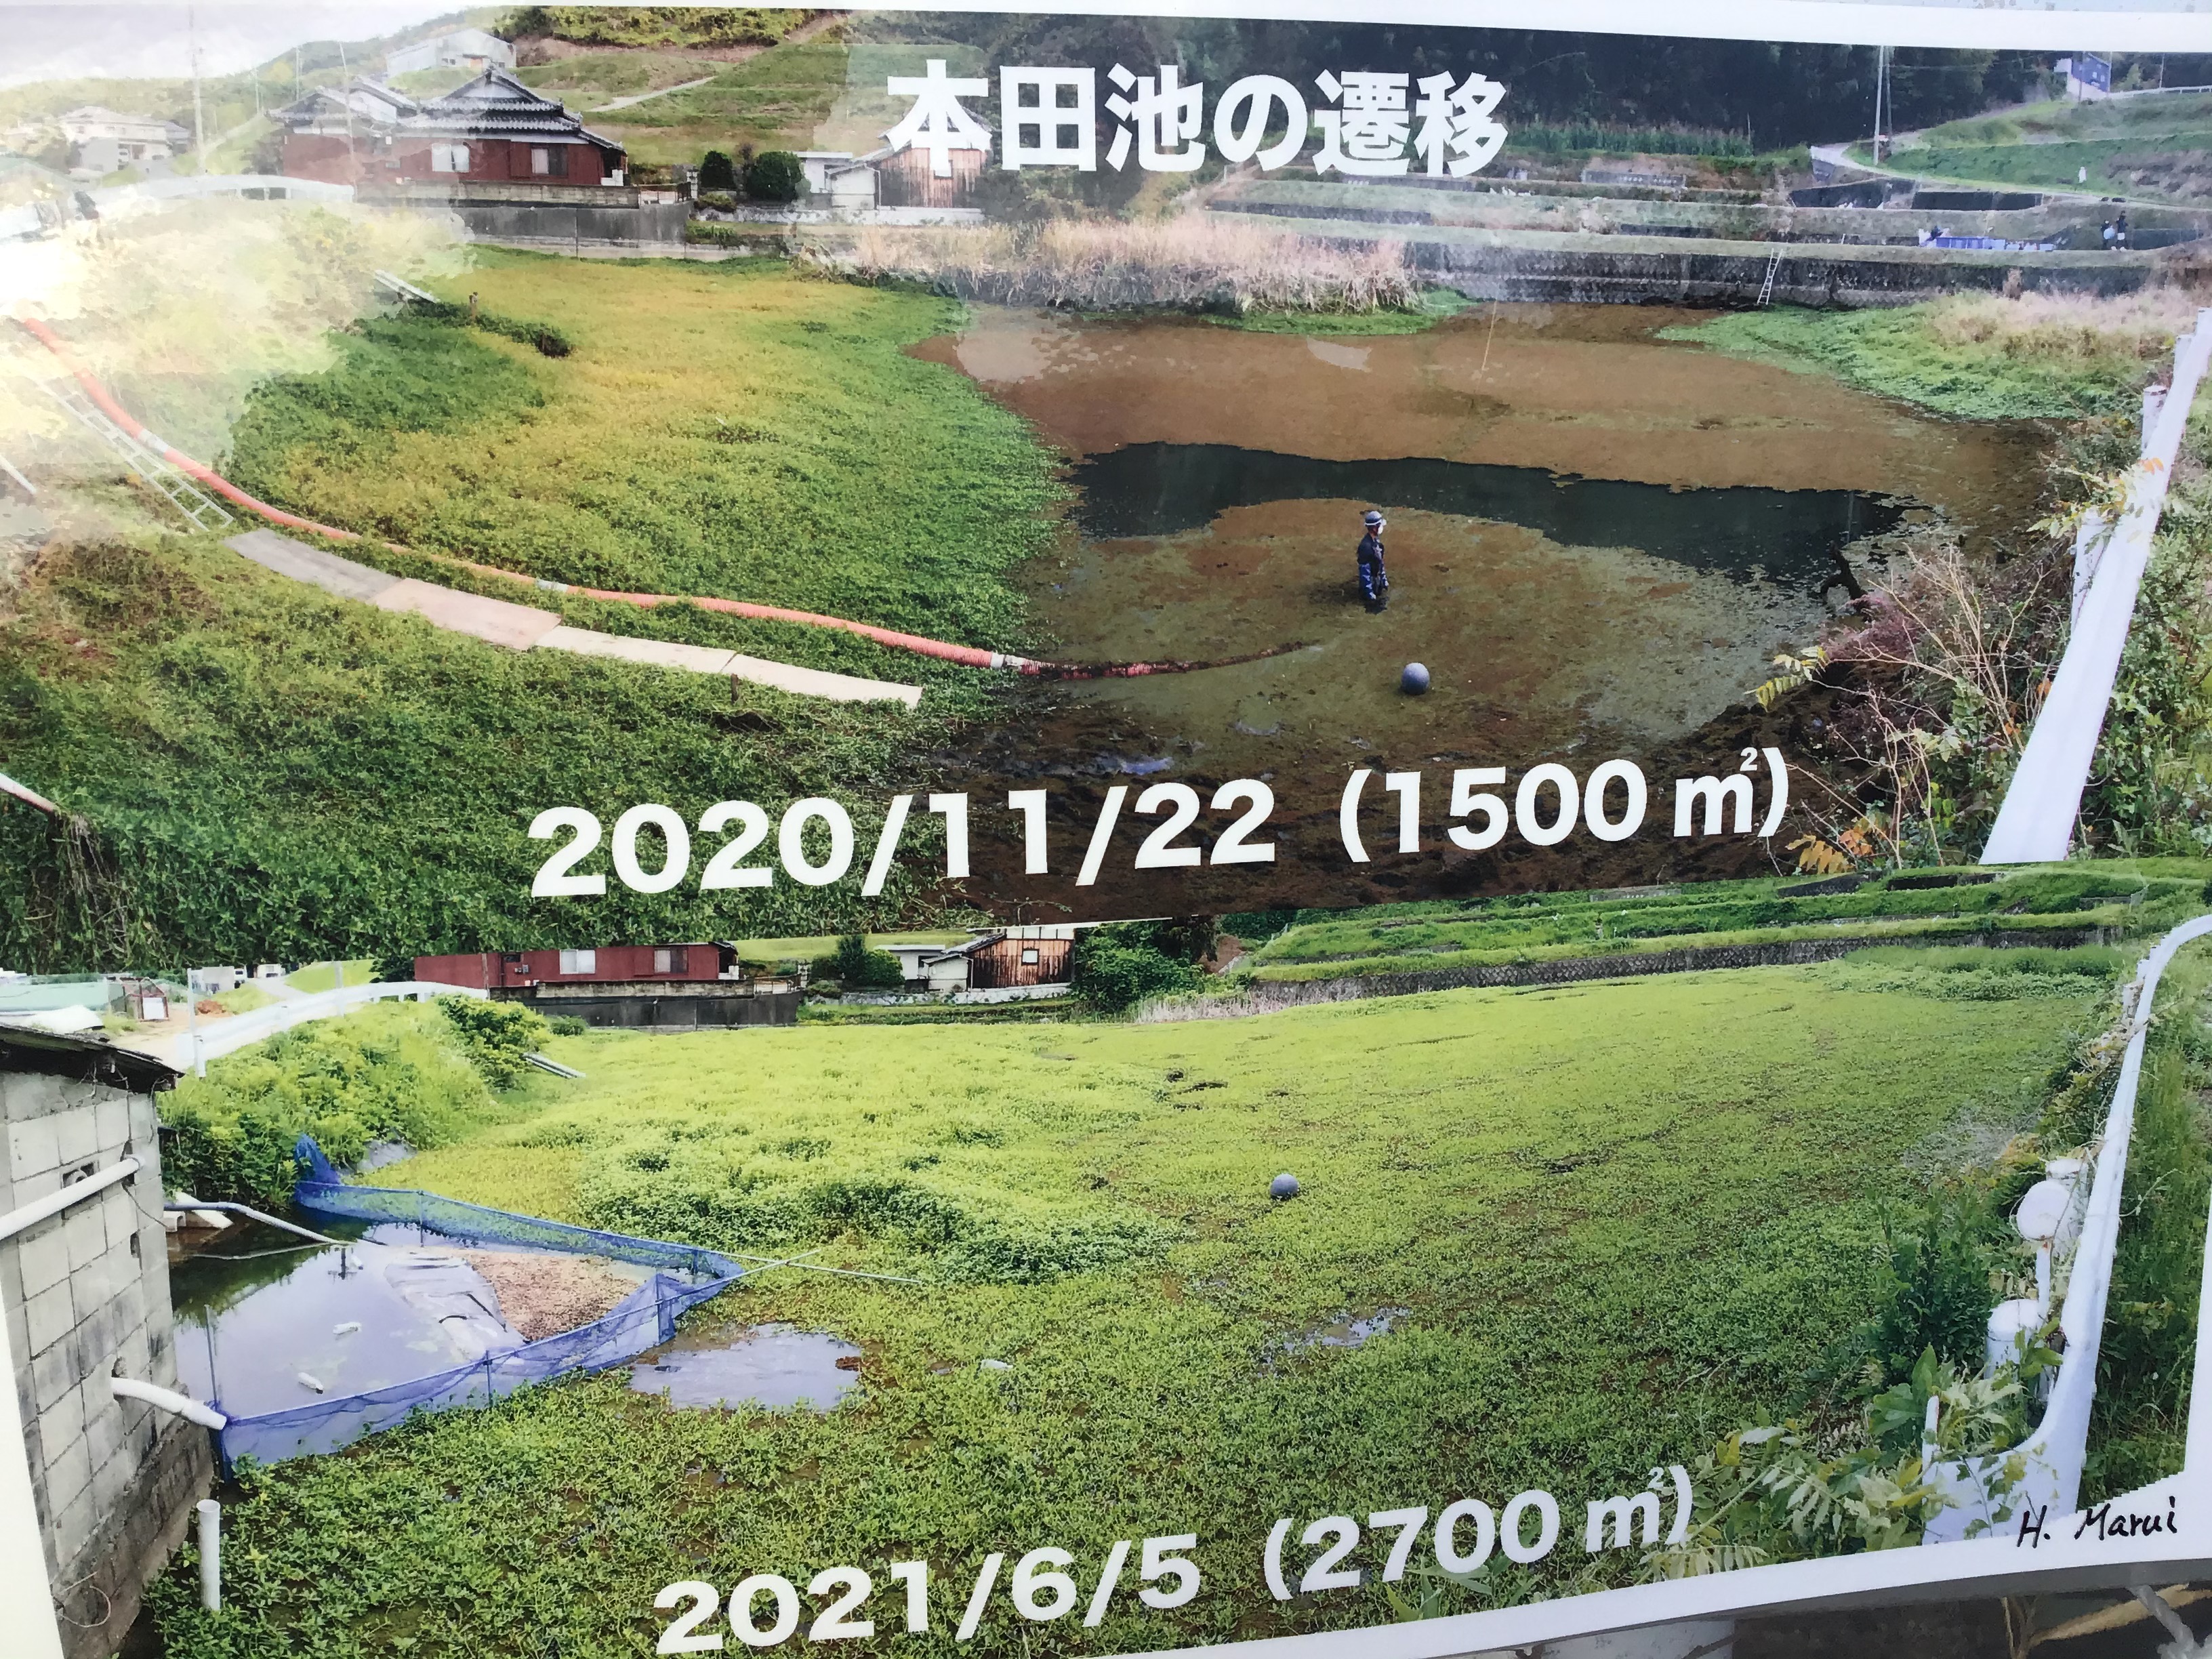 池横の張紙。上の写真中央はまだアゾラが繁茂し左がナガエ。下の写真はほぼナガエ。丸井先生のサインが右下に。これは、解り易い。